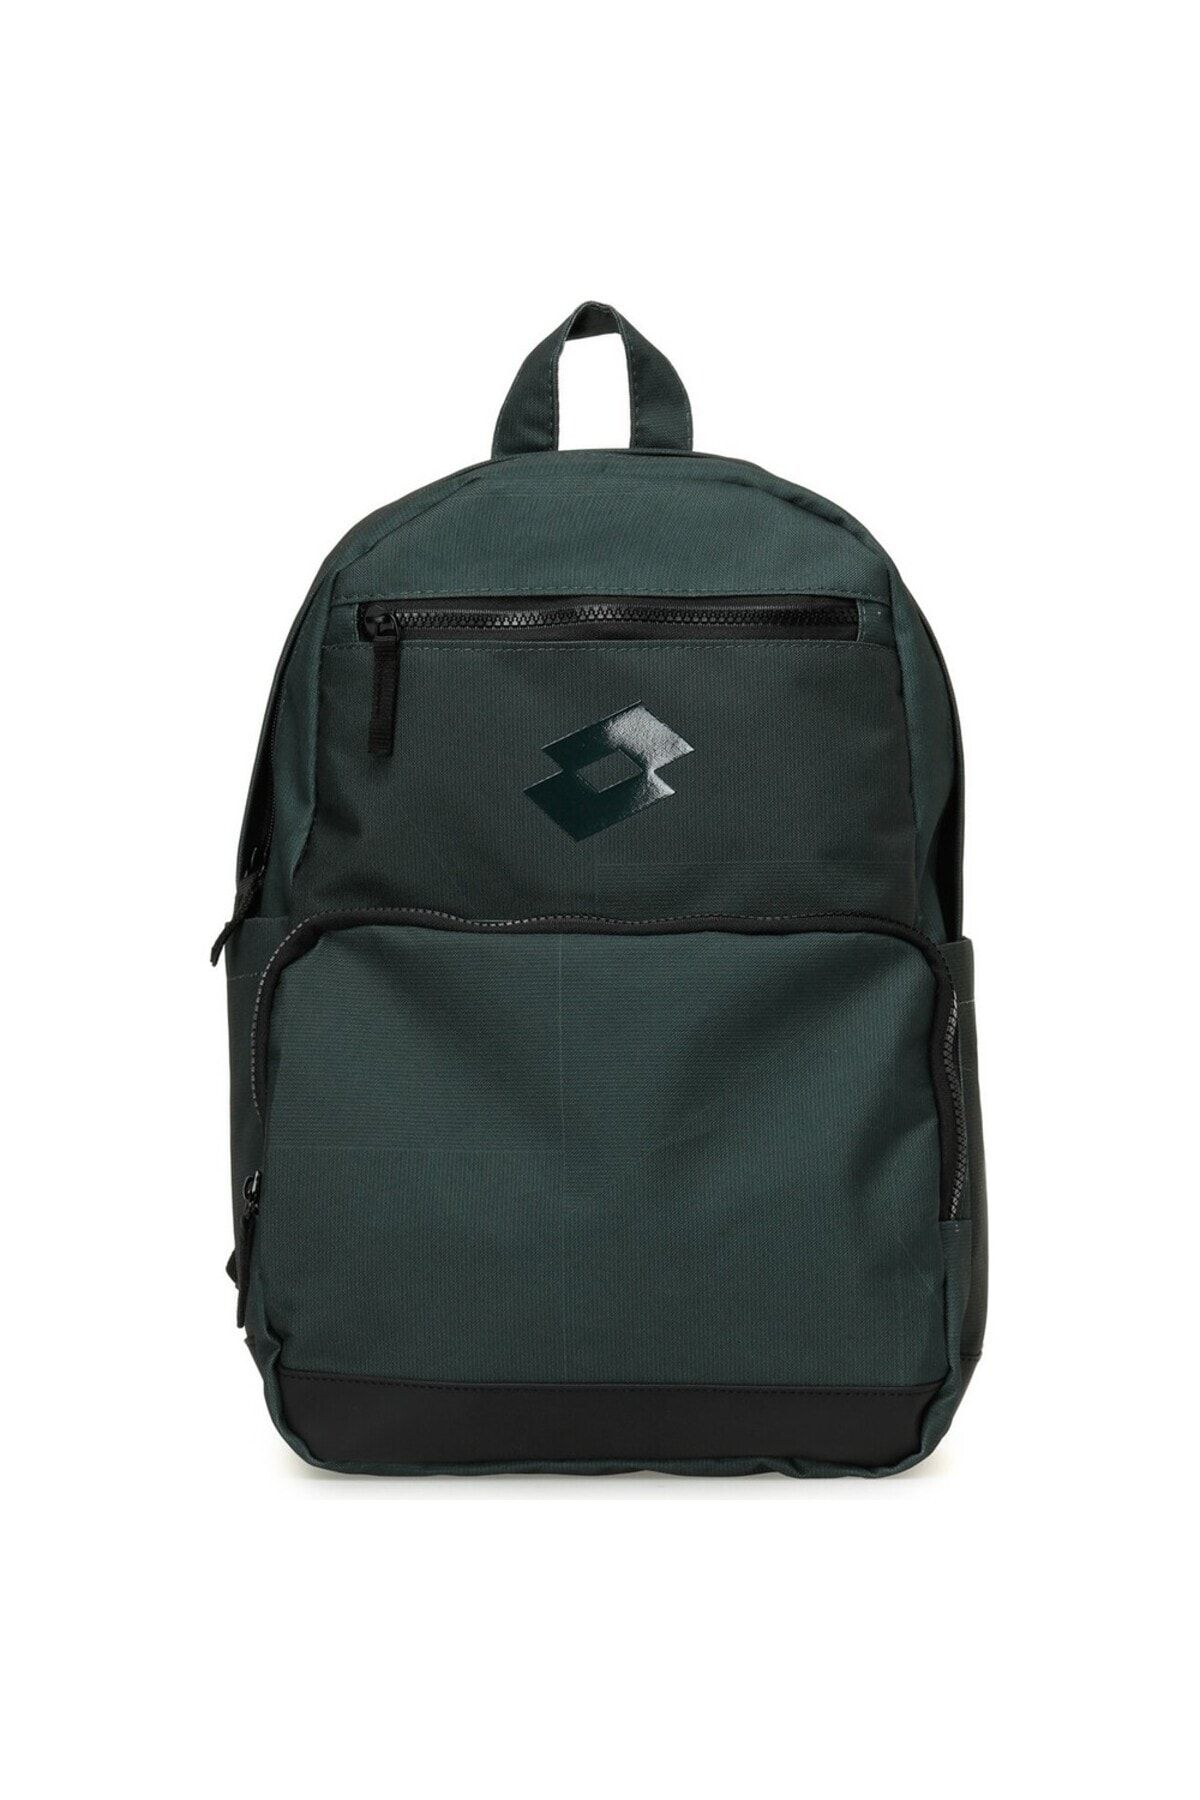 Buy Lotto Unisex Black & White Backpack - Backpacks for Unisex 246147 |  Myntra